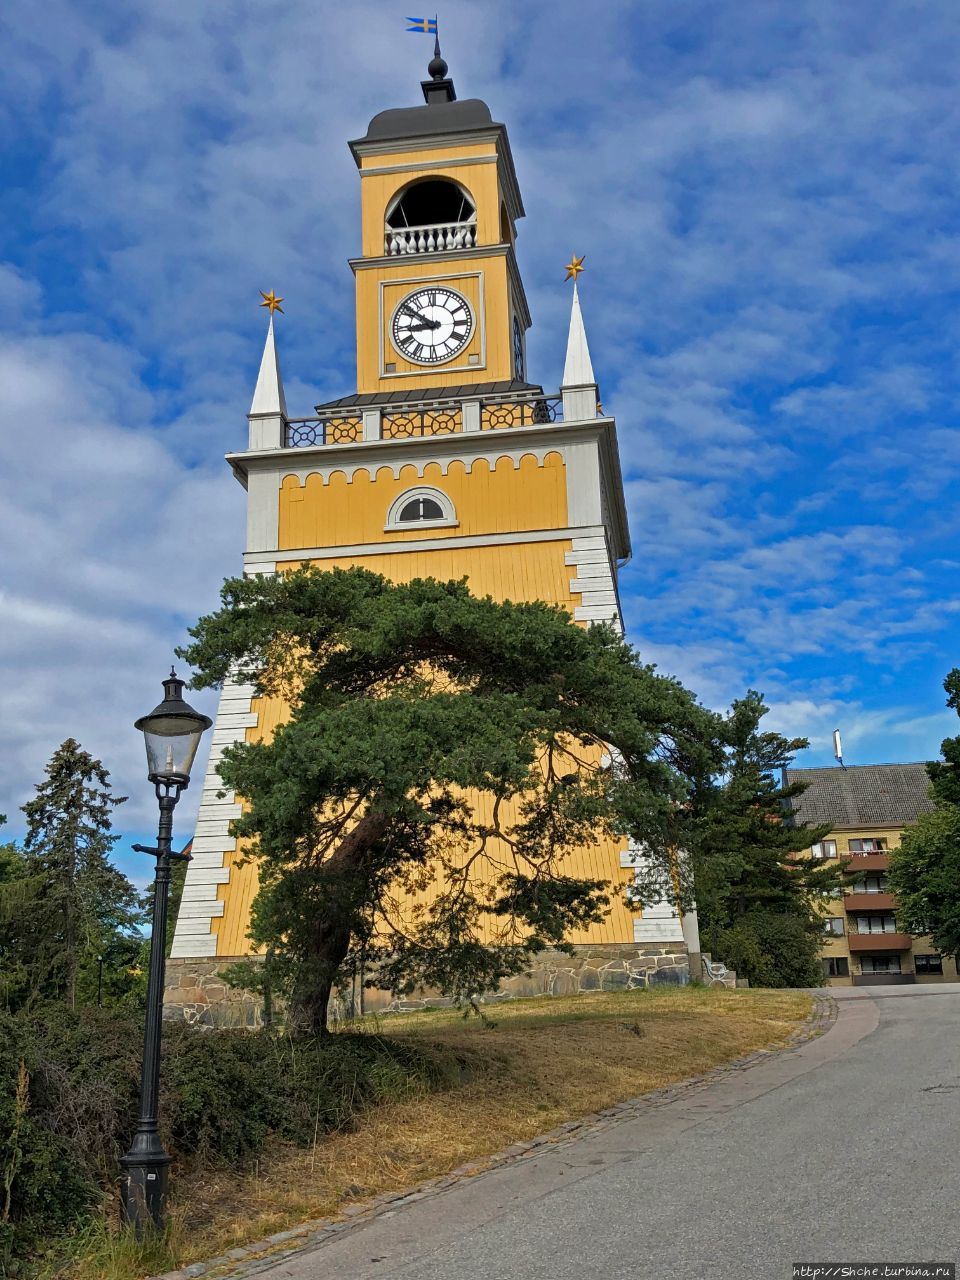 Адмиралтейская часовая башня - заметный символ Карлскруны